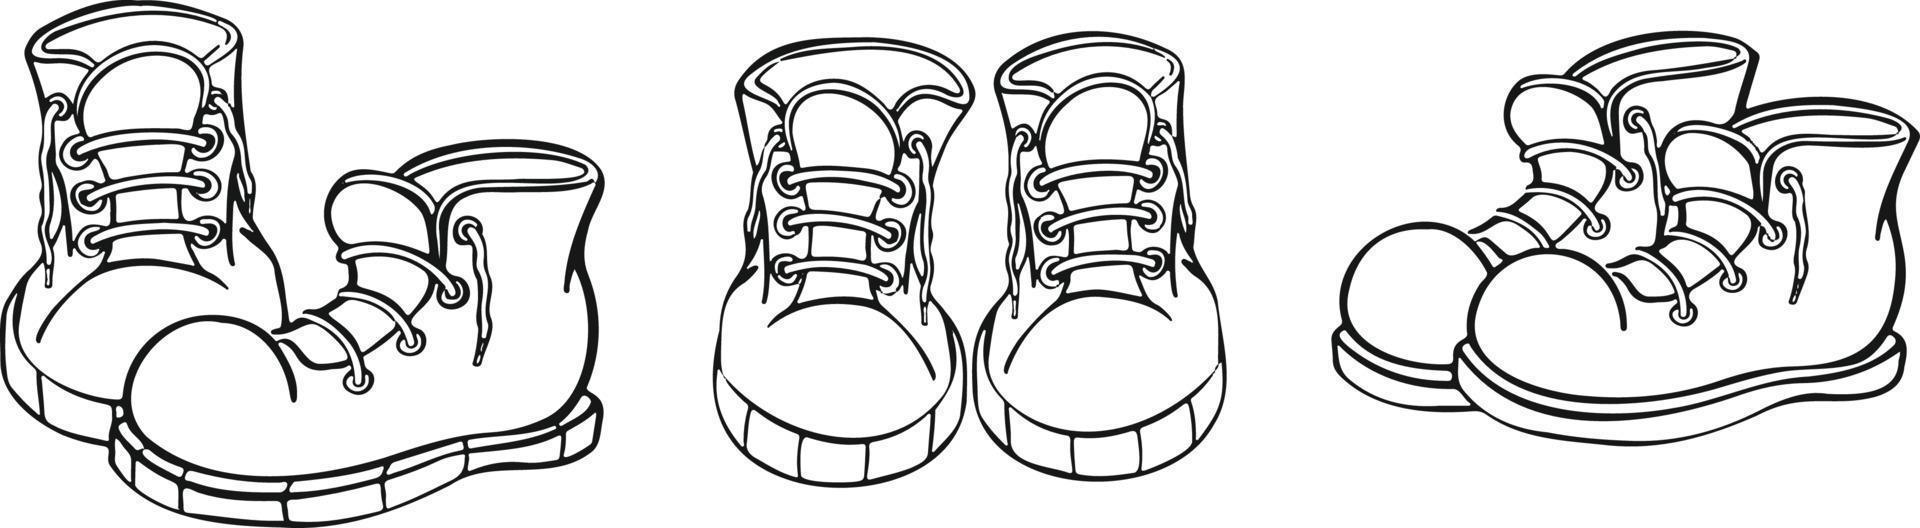 conjunto de zapatillas deportivas zapatillas deportivas en diferentes ángulos caminando vector